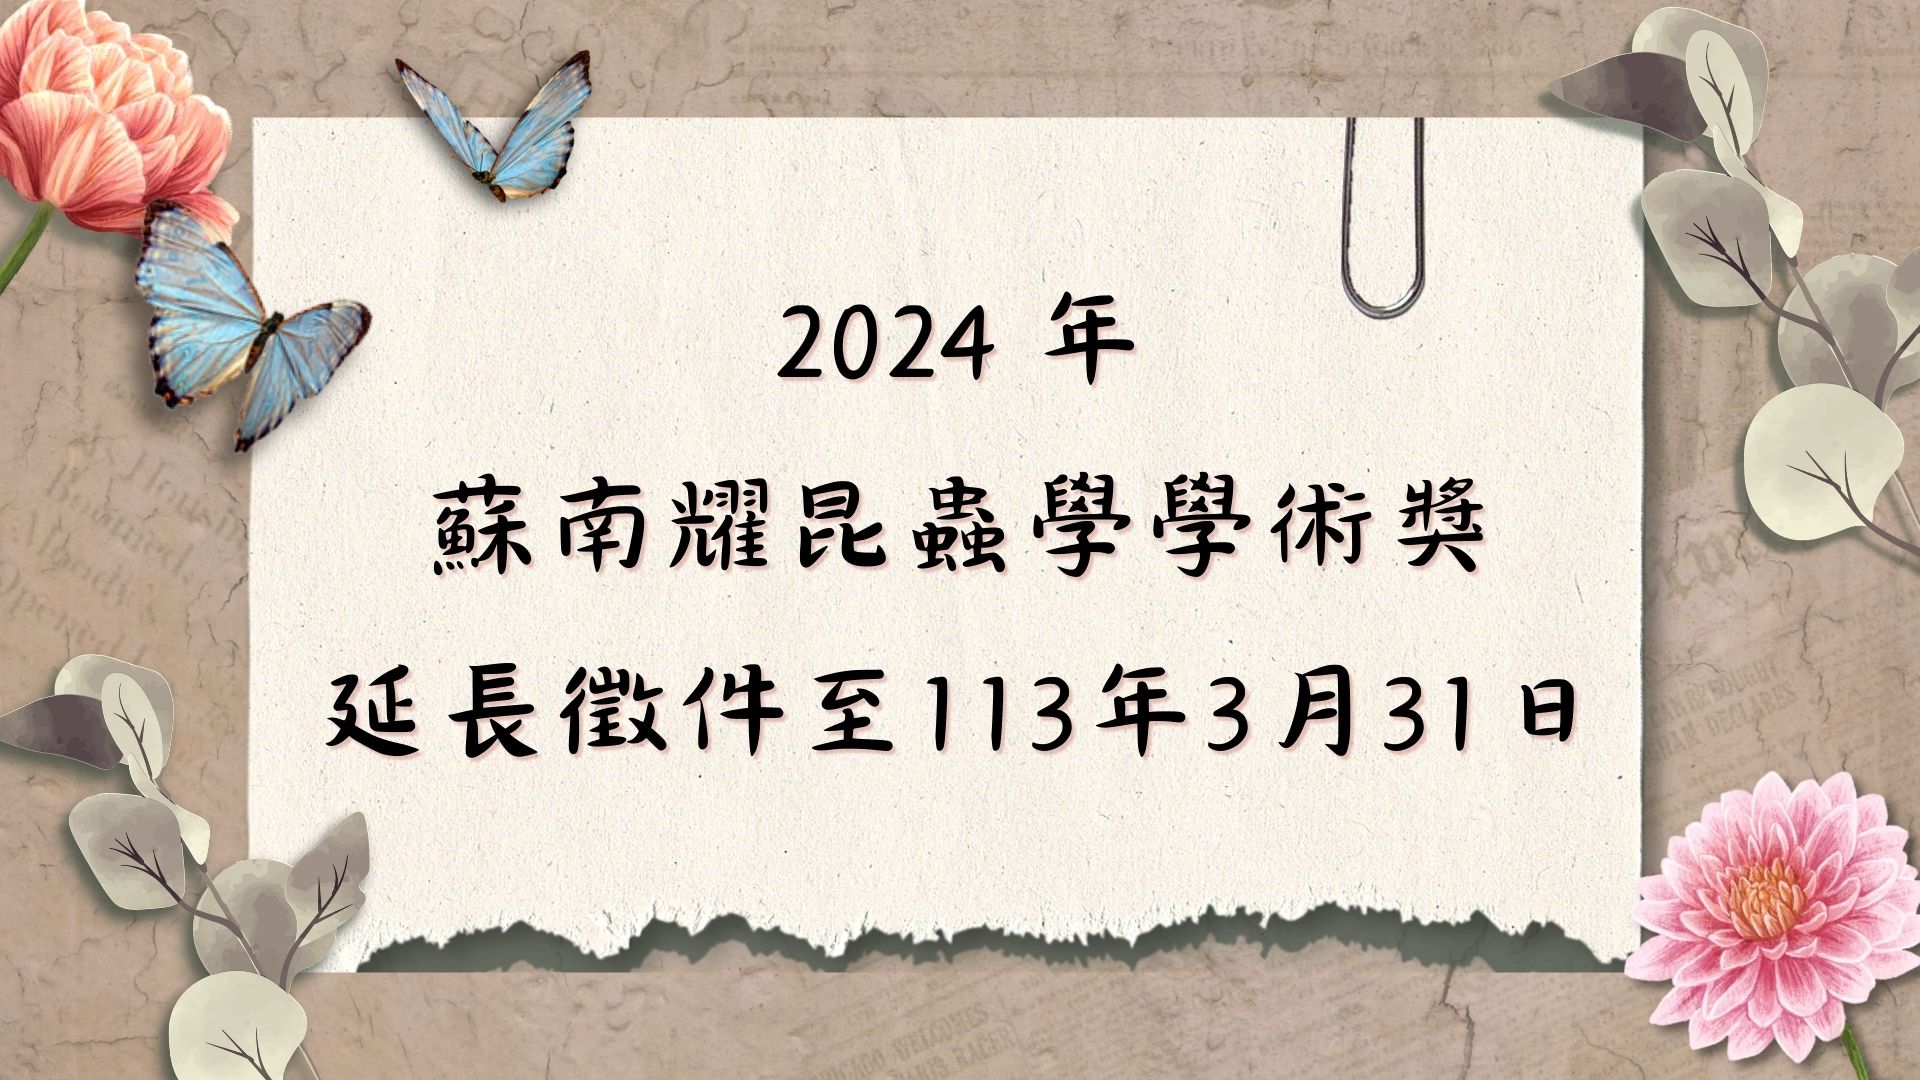 【轉知】2024年蘇南耀昆蟲學學術獎 徵件中(延長徵件至113/03/31)